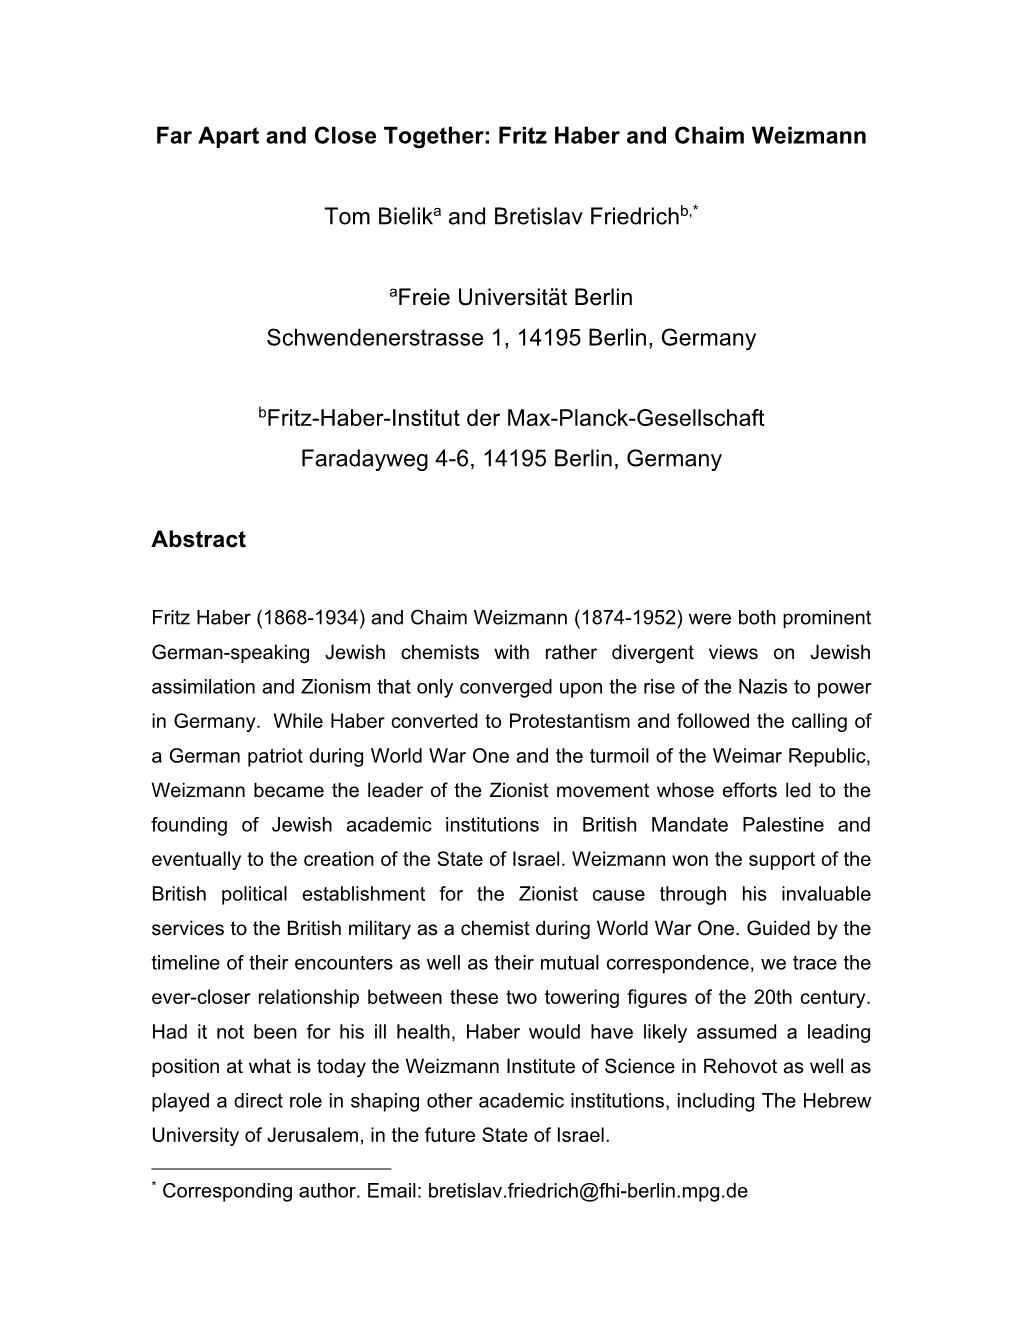 Haber and Weizmann Essay 2.6.2020